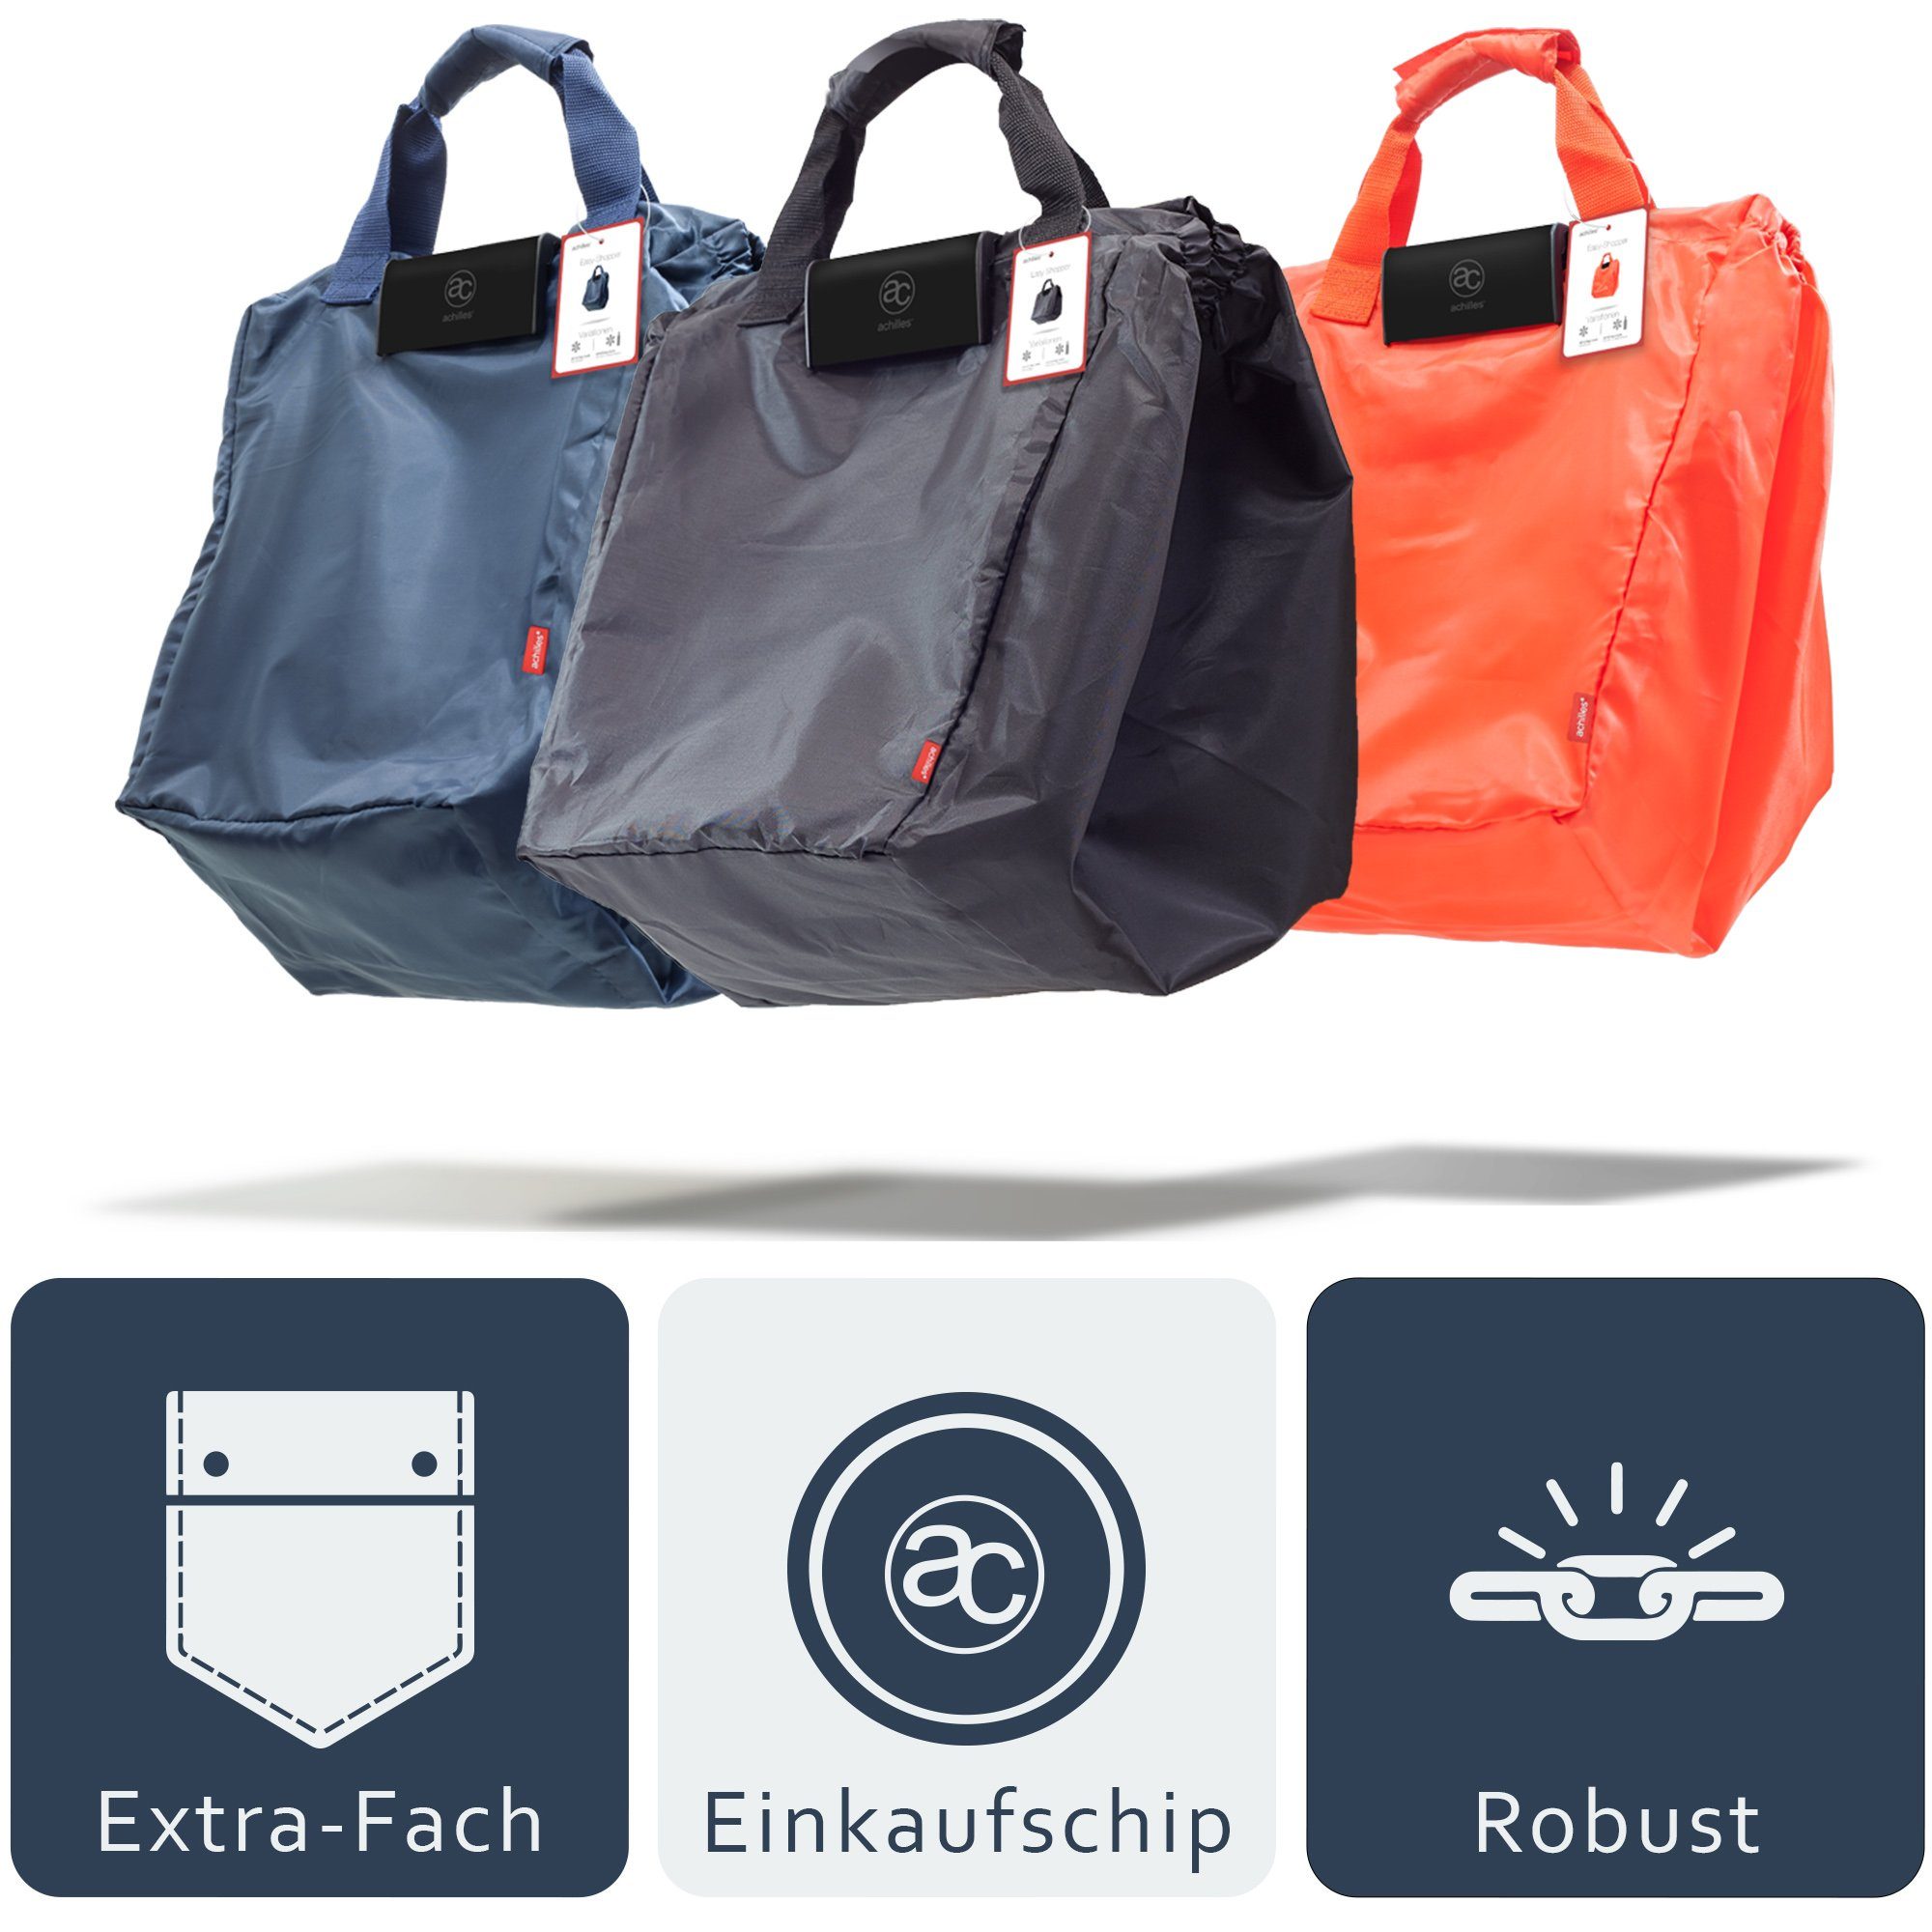 achilles Einkaufsshopper Easy-Shopper "Combi" 40 Faltbare l Einkaufswagentasche rot Einkaufstasche